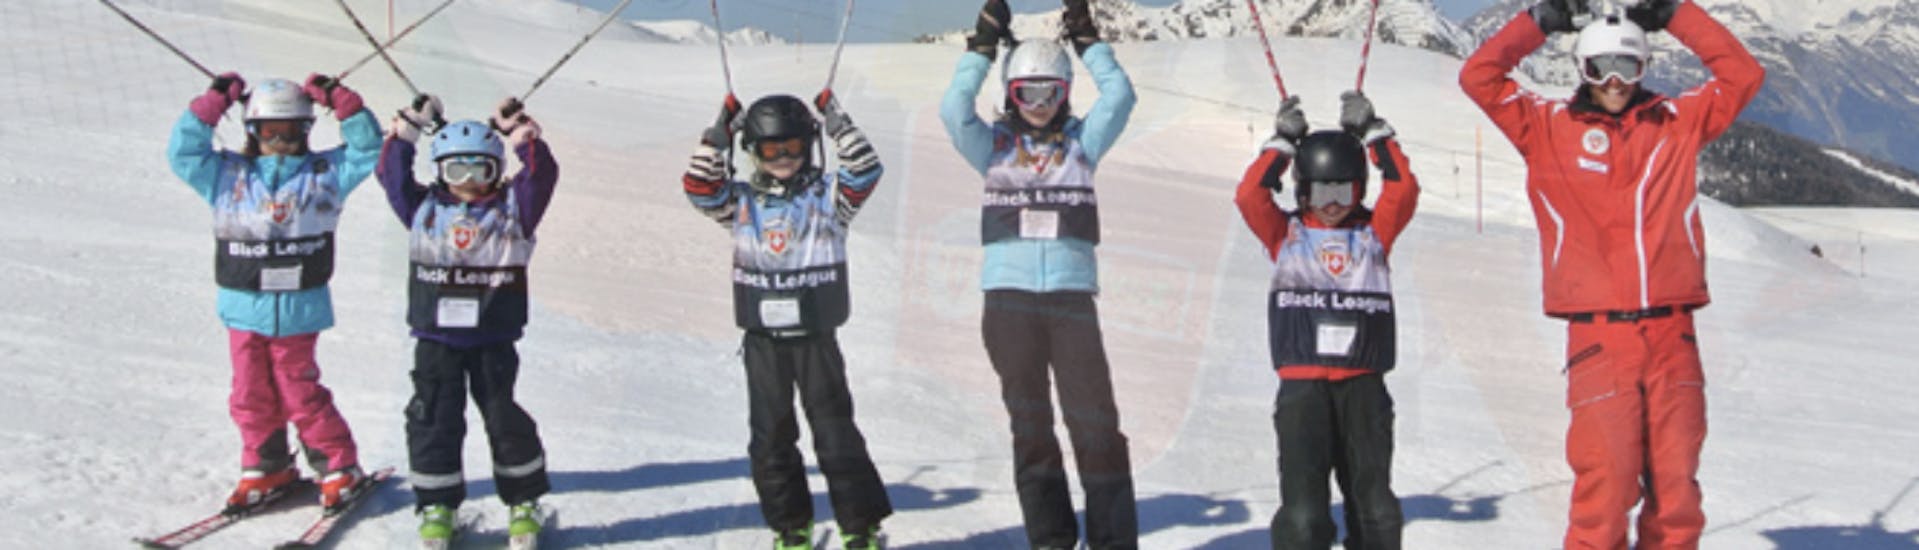 Cours de Ski pour Enfants (5 à 12 ans) Tracouet.